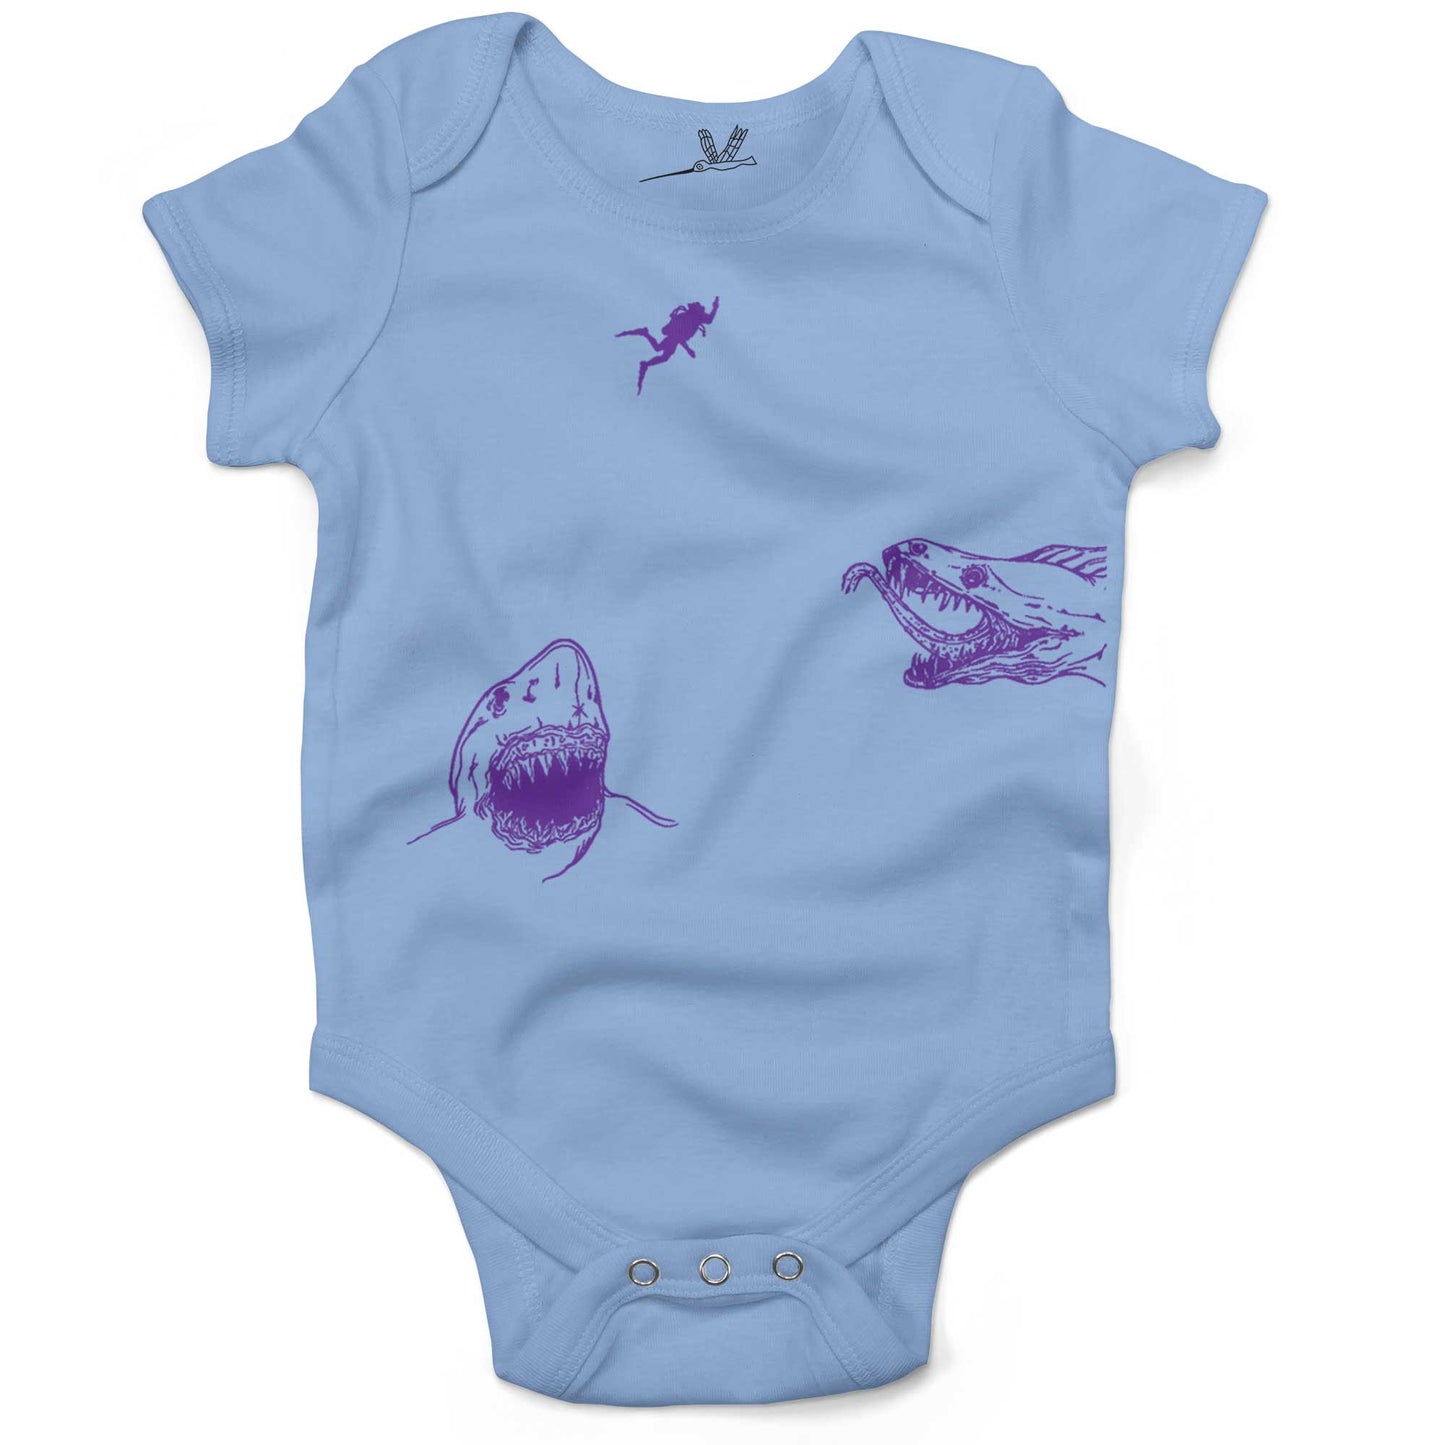 Scuba Diving Infant Bodysuit-Organic Baby Blue-3-6 months